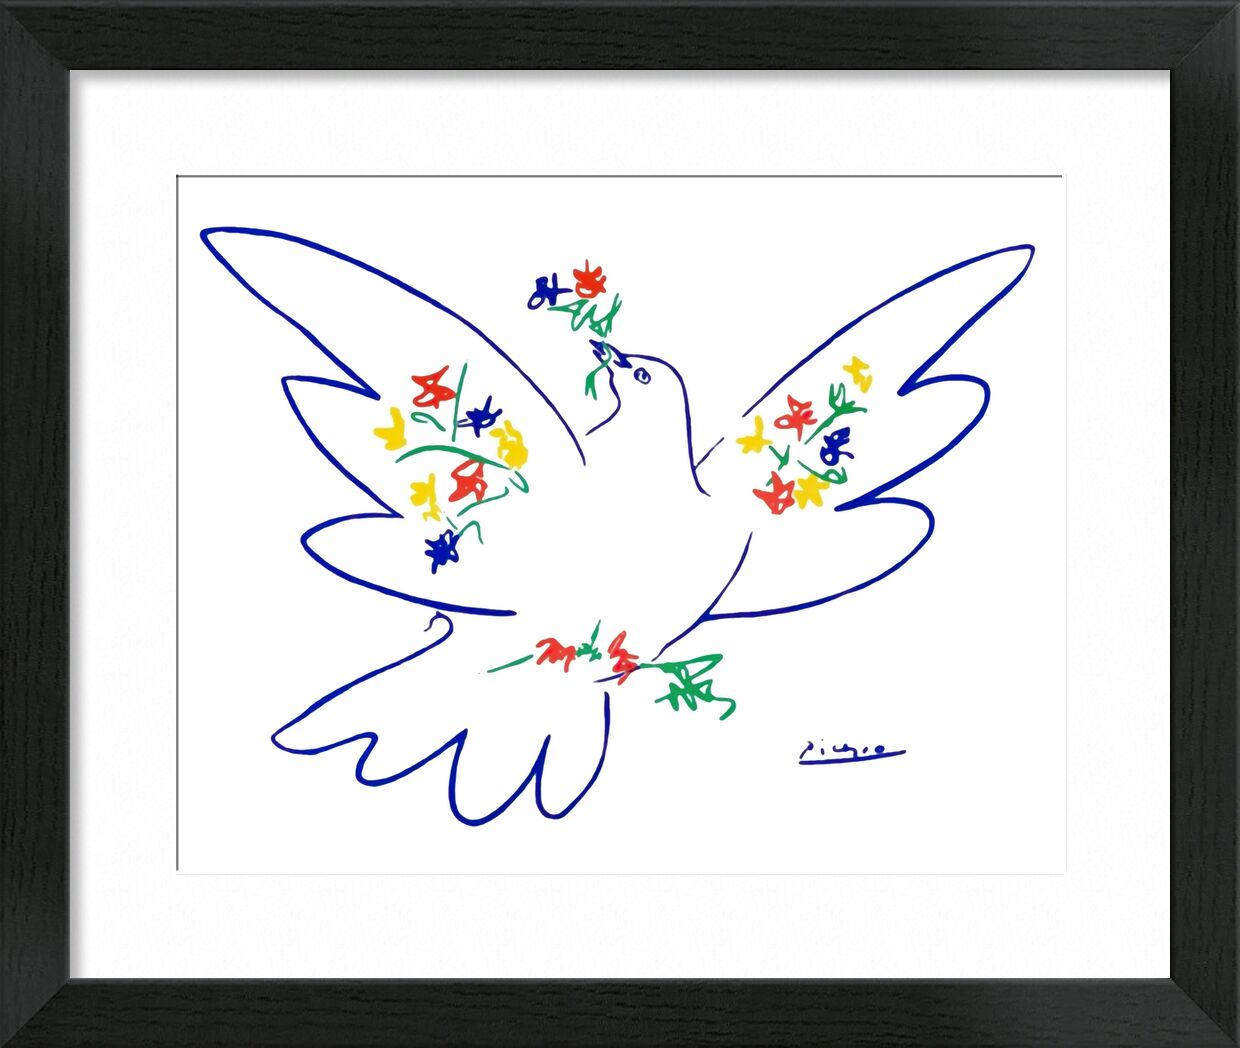 Dove of peace von Bildende Kunst, Prodi Art, PABLO PICASSO, Bleistiftzeichnung, Zeichnung, Liebe, Frieden, Taube